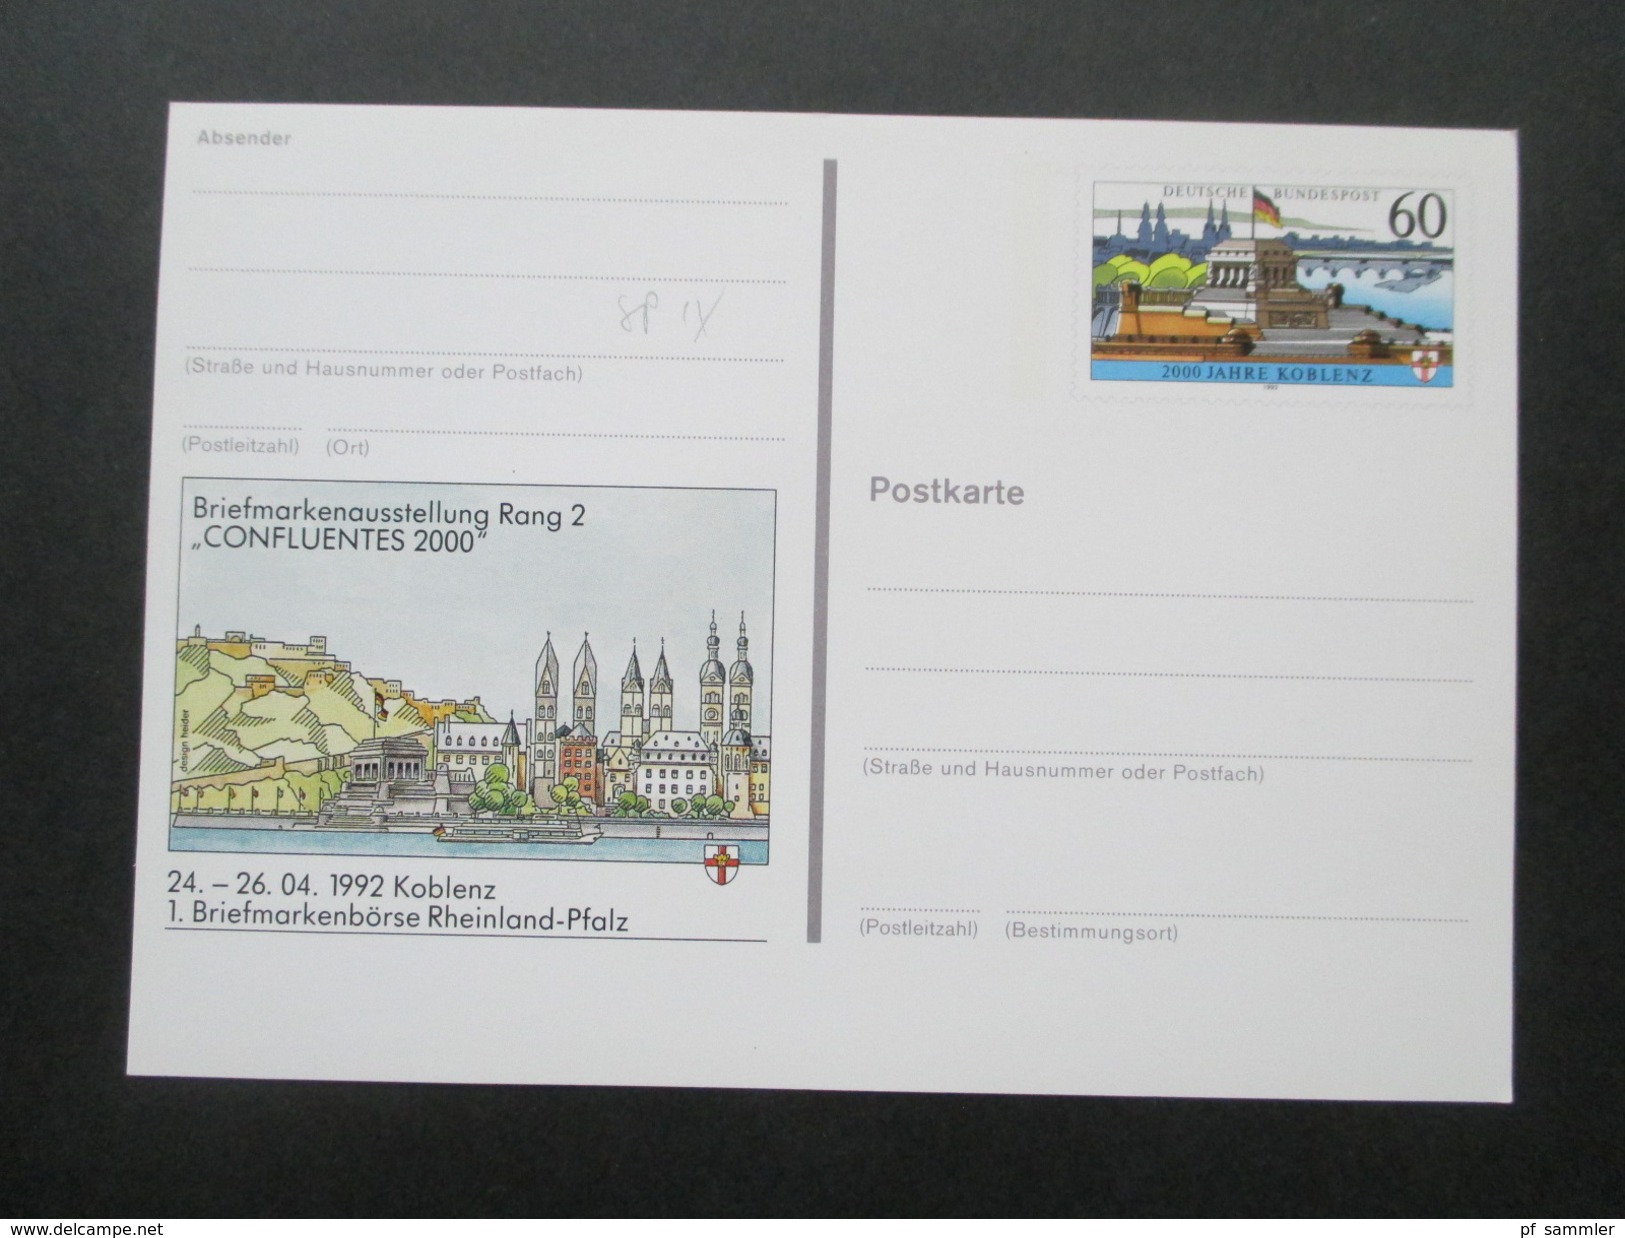 BRD Ganzsachen 1980 - 98 Sonderpostkarten! 82 Stück! Briefmarken Ausstellungen usw. ungebraucht / guter Zustand!